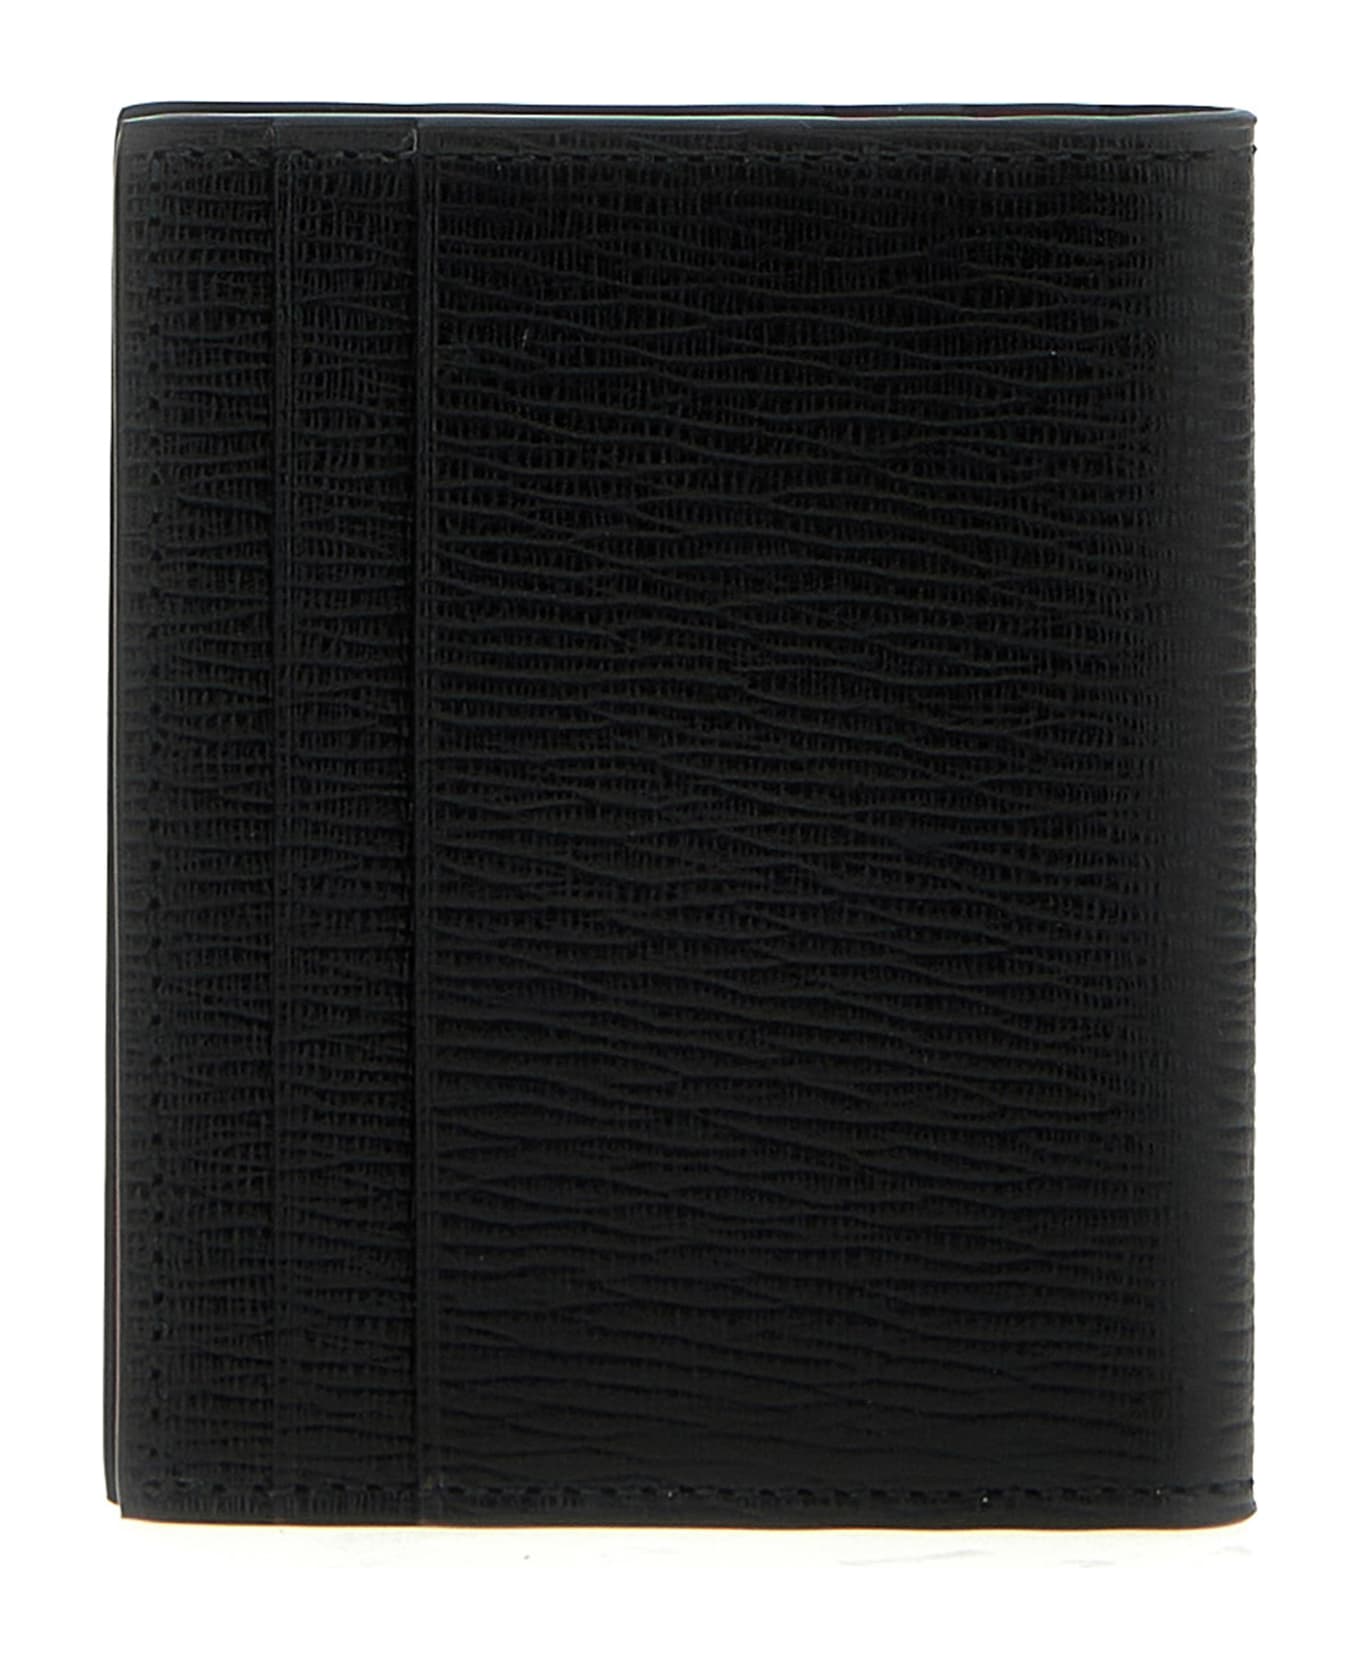 Ferragamo 'gancini' Card Holder - Black   財布